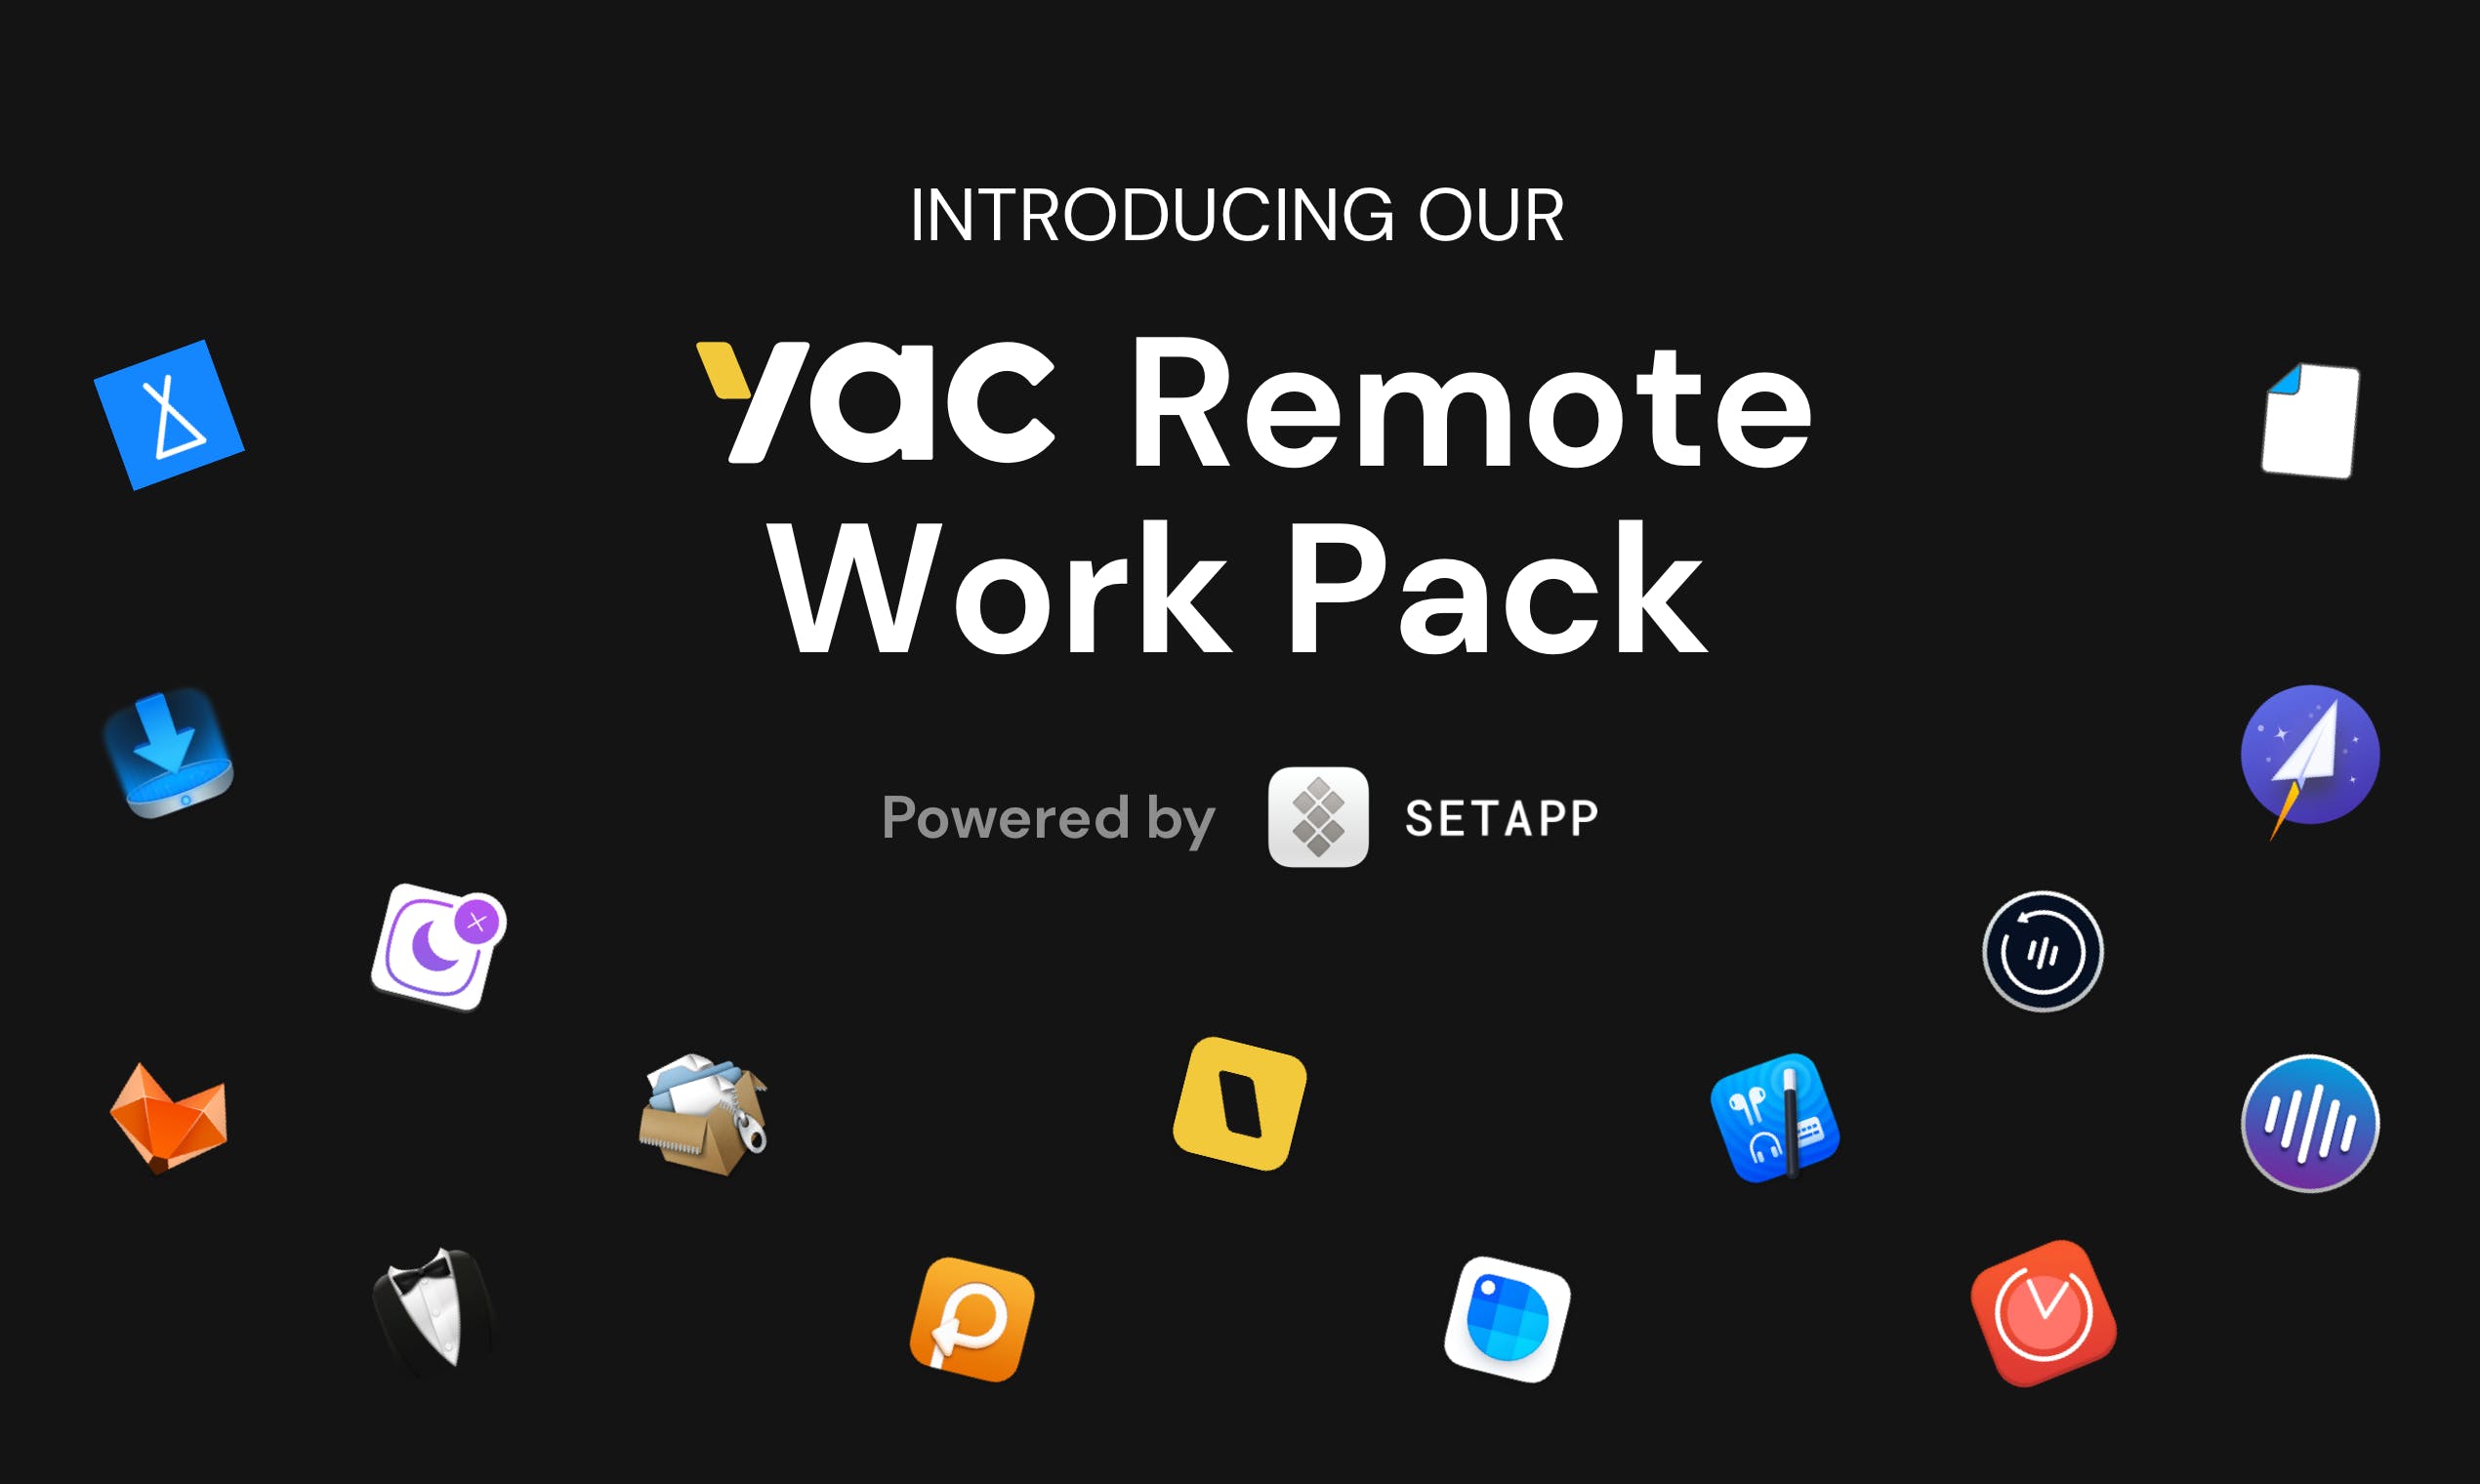 Yac Remote Work Pack on Setapp media 2